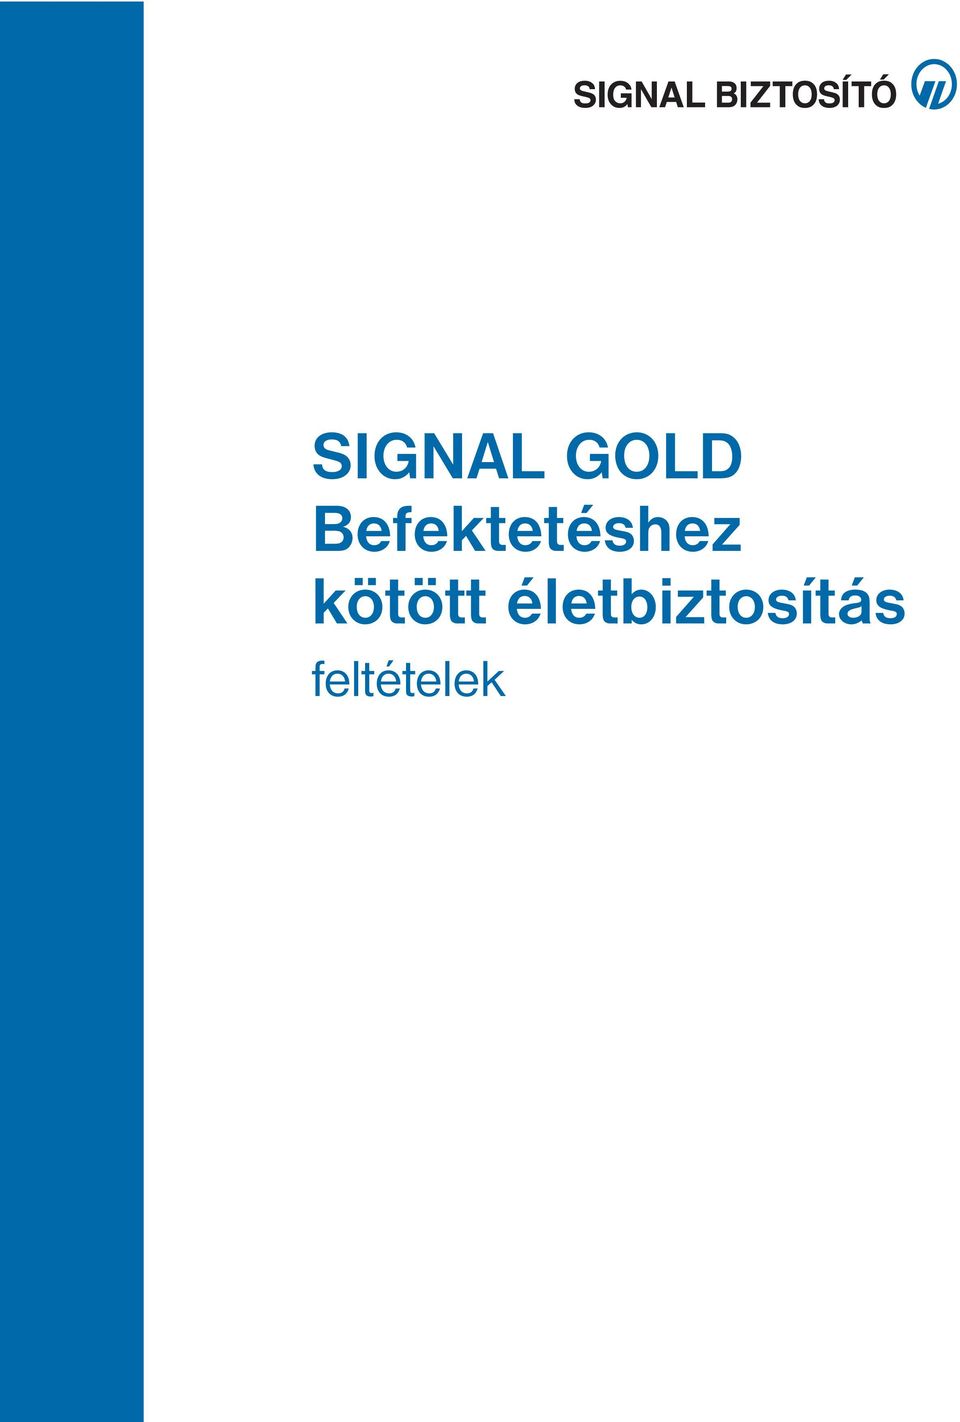 SIGNAL GOLD Befektetéshez kötött életbiztosítás. feltételek - PDF Ingyenes  letöltés